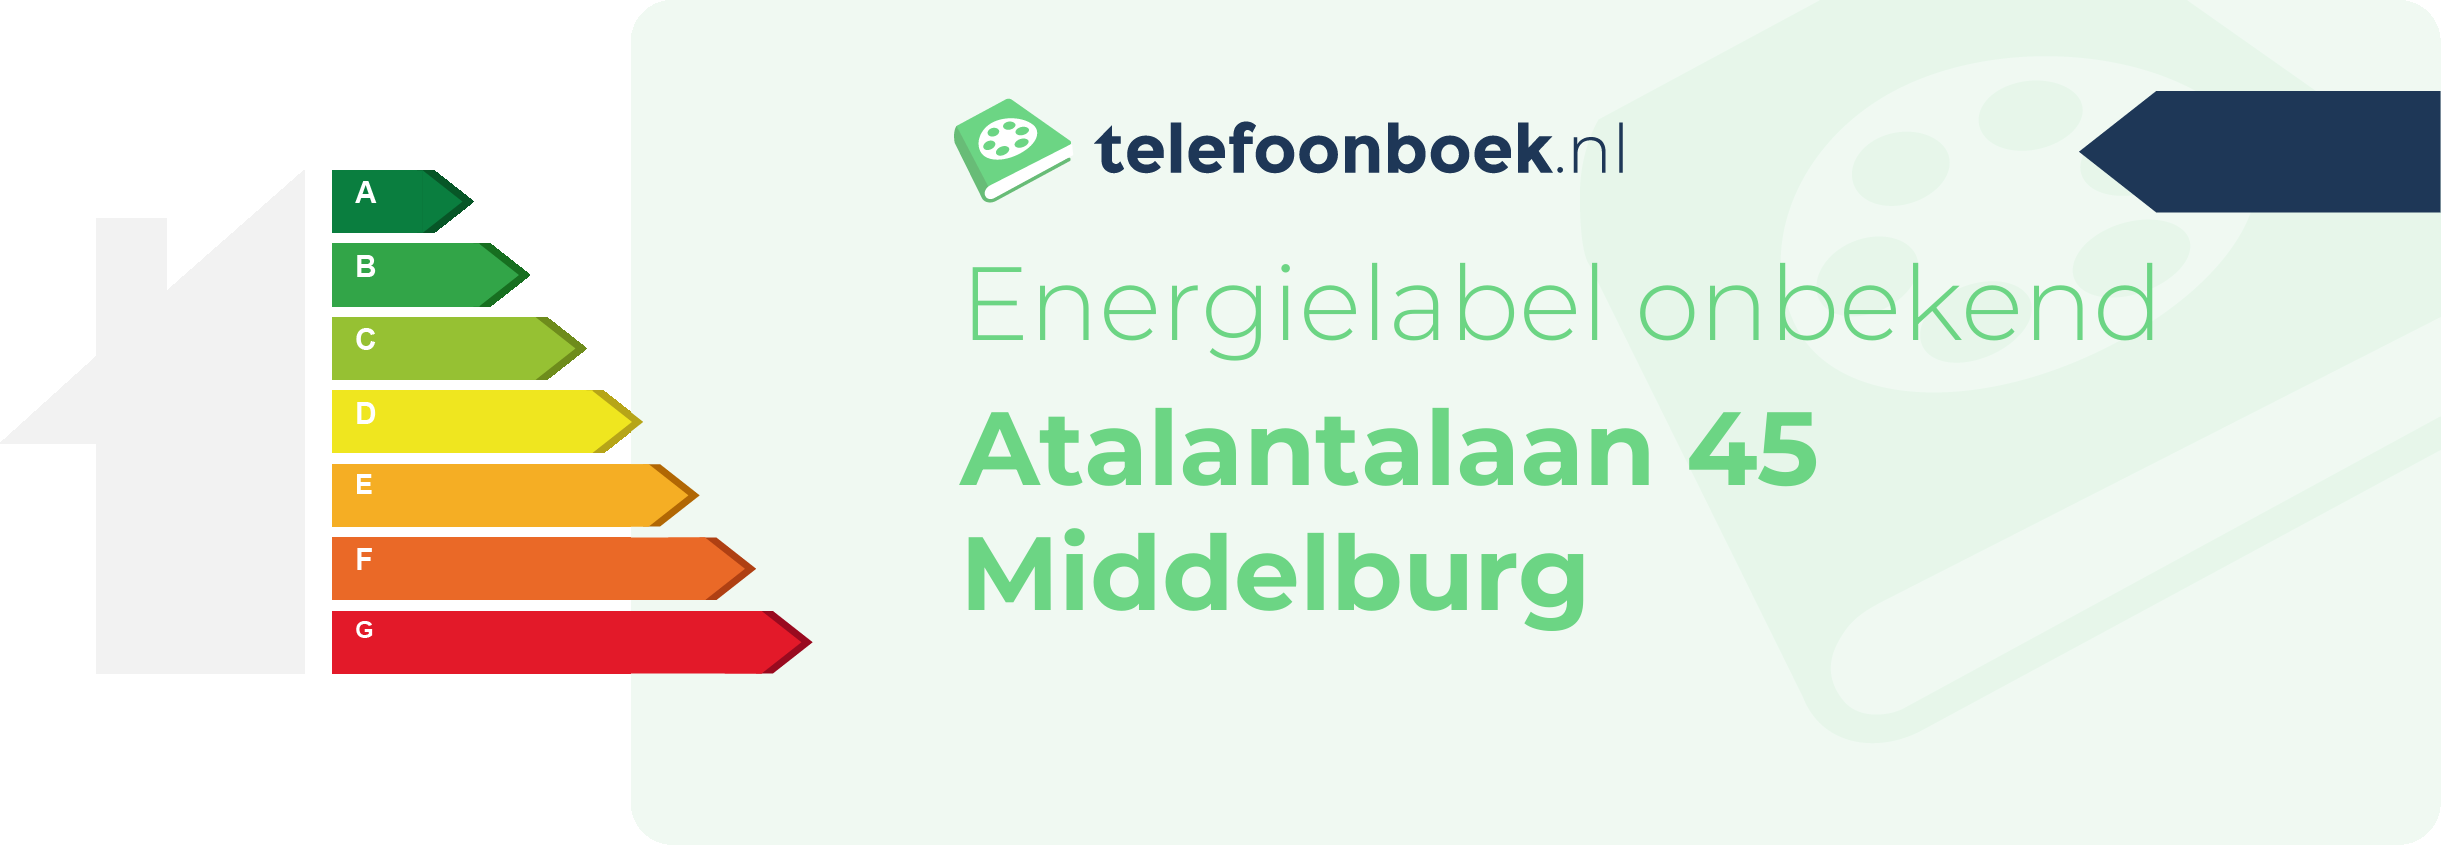 Energielabel Atalantalaan 45 Middelburg